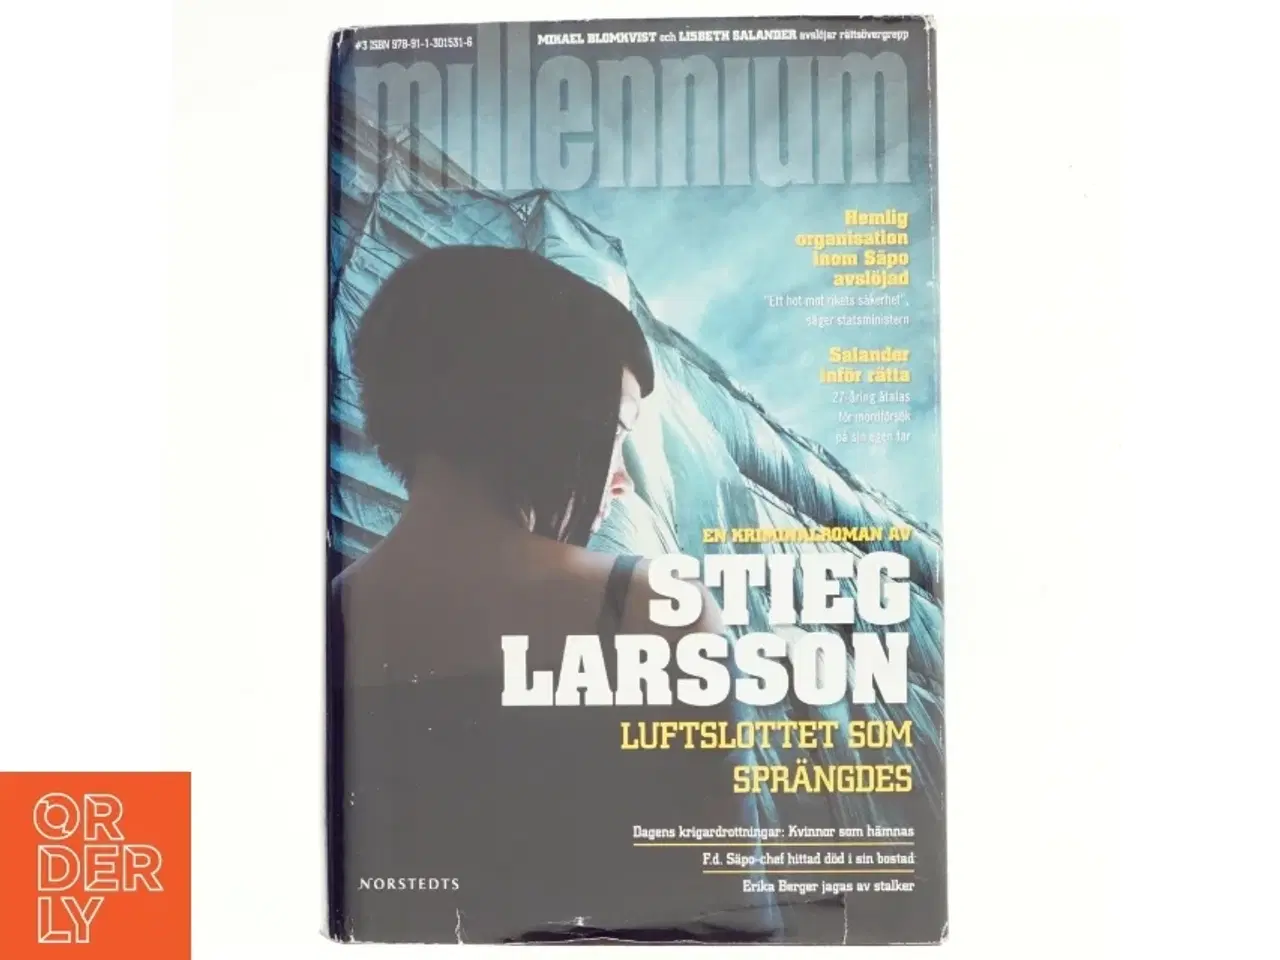 Billede 1 - Luftslottet som sprängdes af Stieg Larsson (Bog)